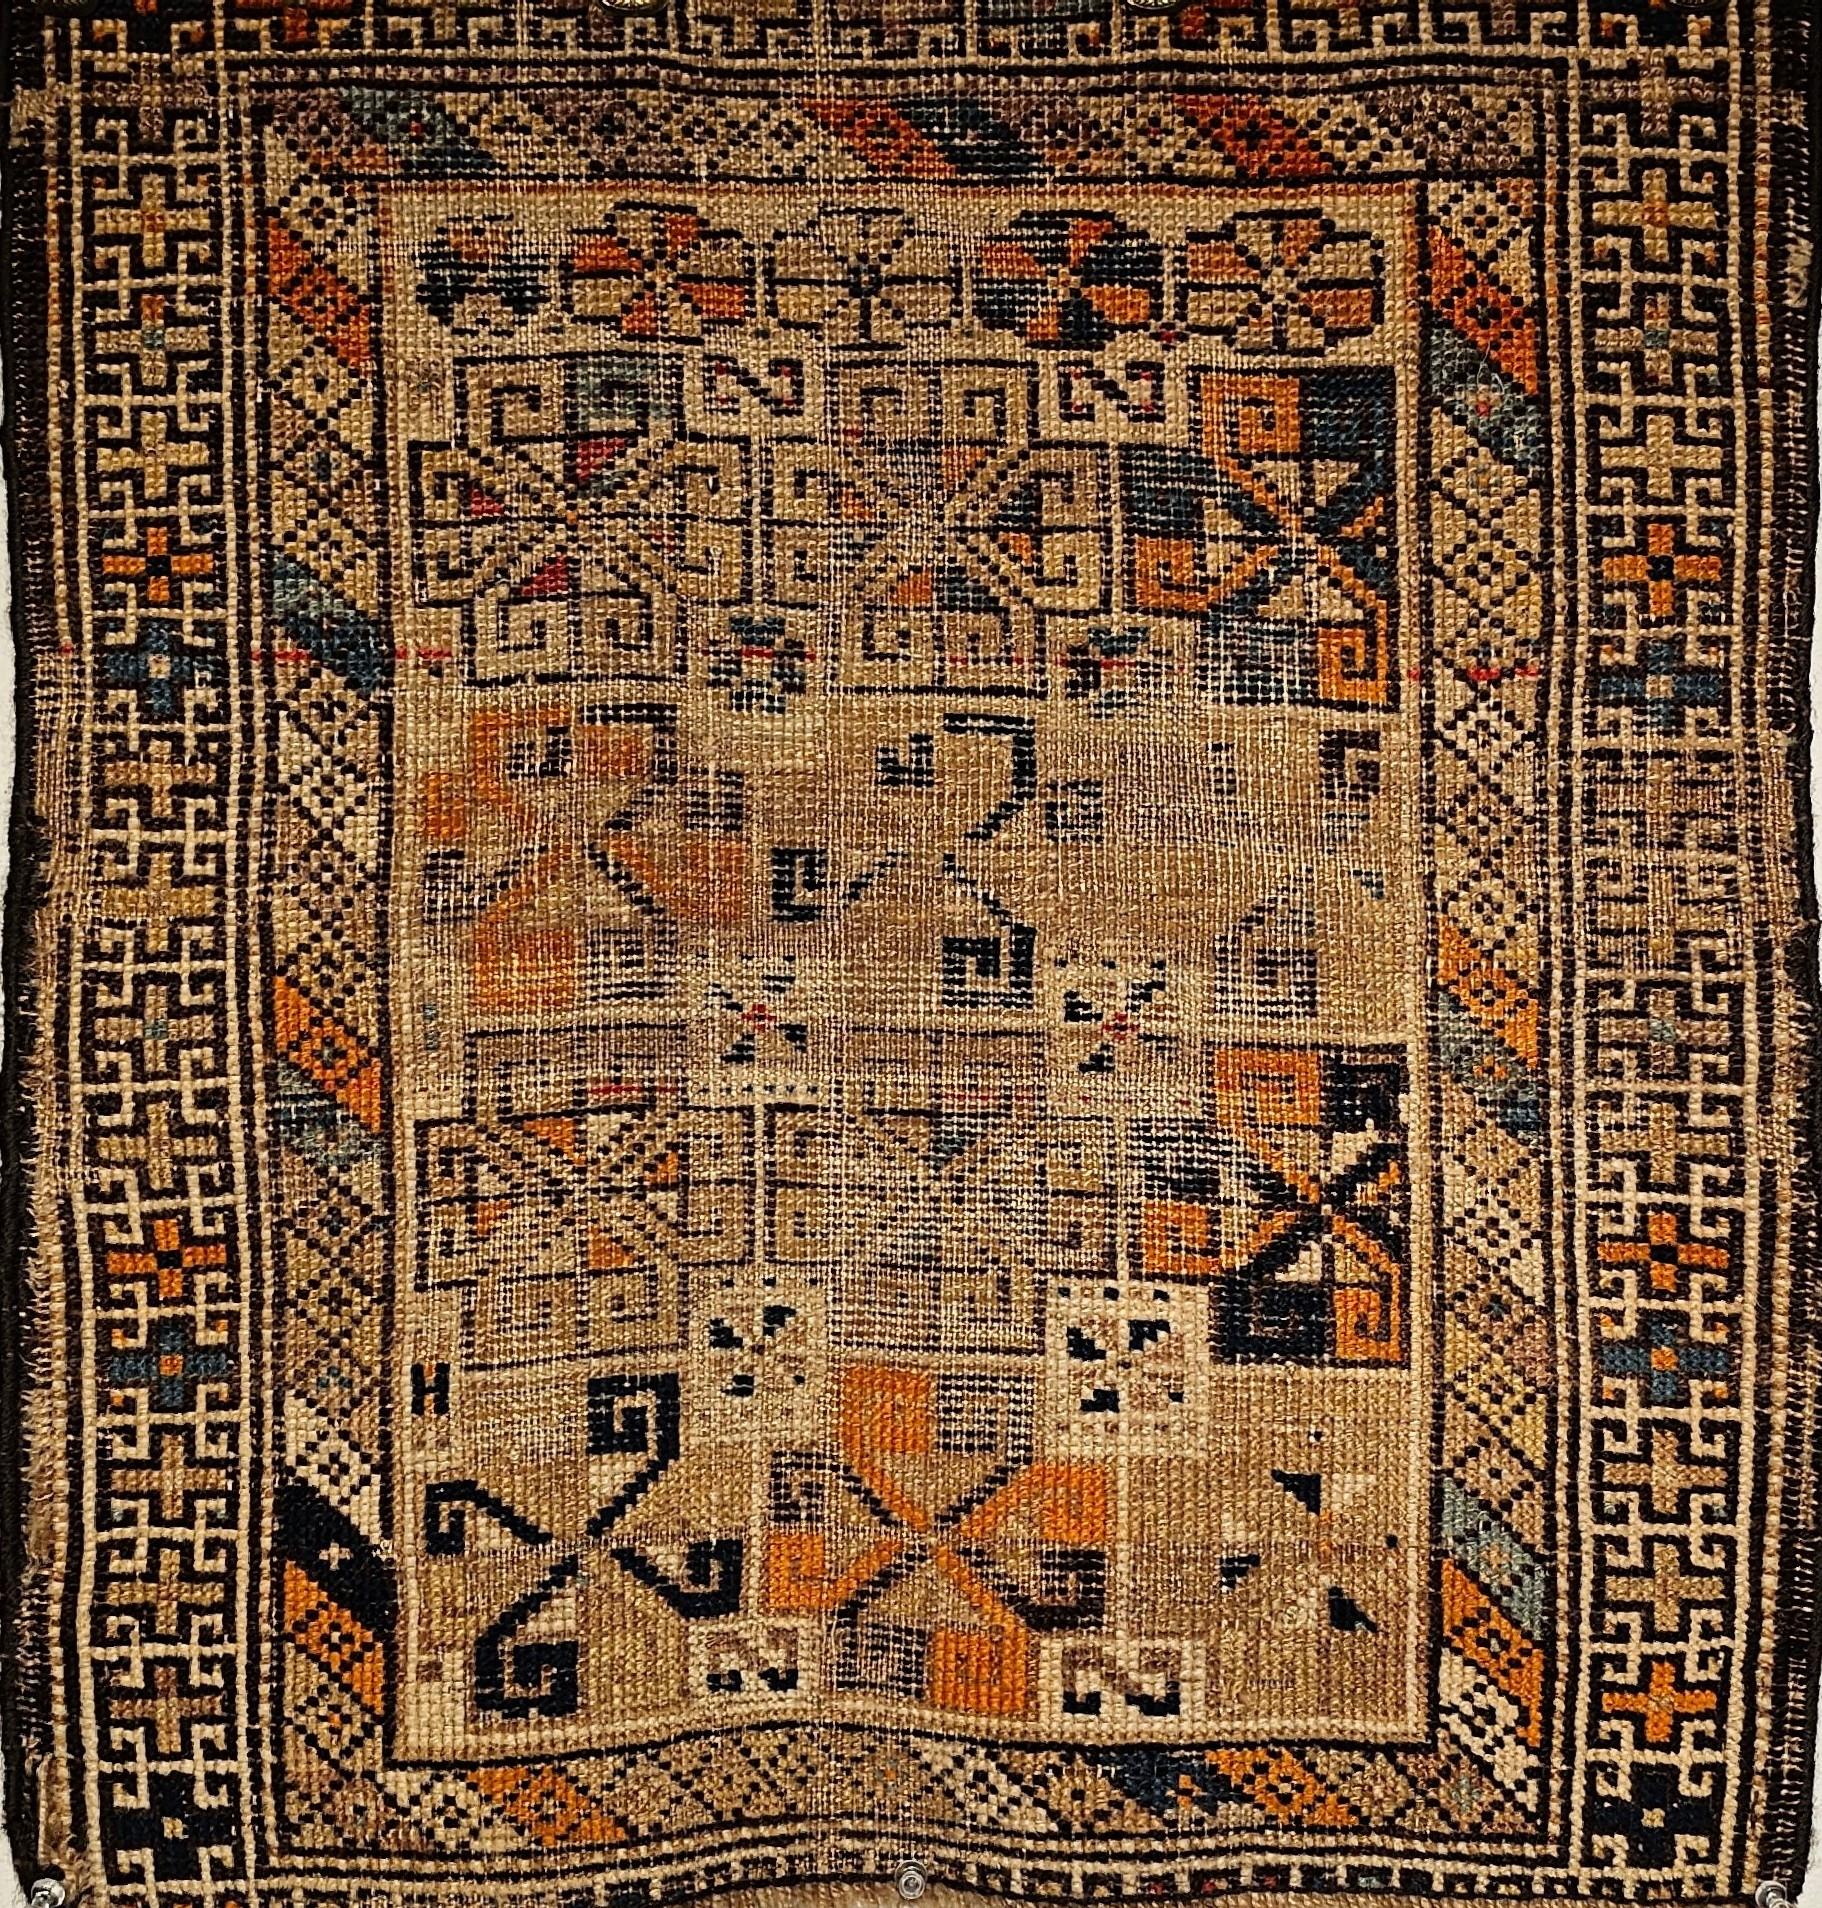  Ein schönes kaukasisches Taschengesicht aus den späten 1800er Jahren.  Der seltene kleine Kazak-Teppich könnte als Taschenvorleger oder Gebetsteppich gewebt worden sein.  Das Freestyle-Allover-Design ist sehr ansprechend.  Die Kombination aus